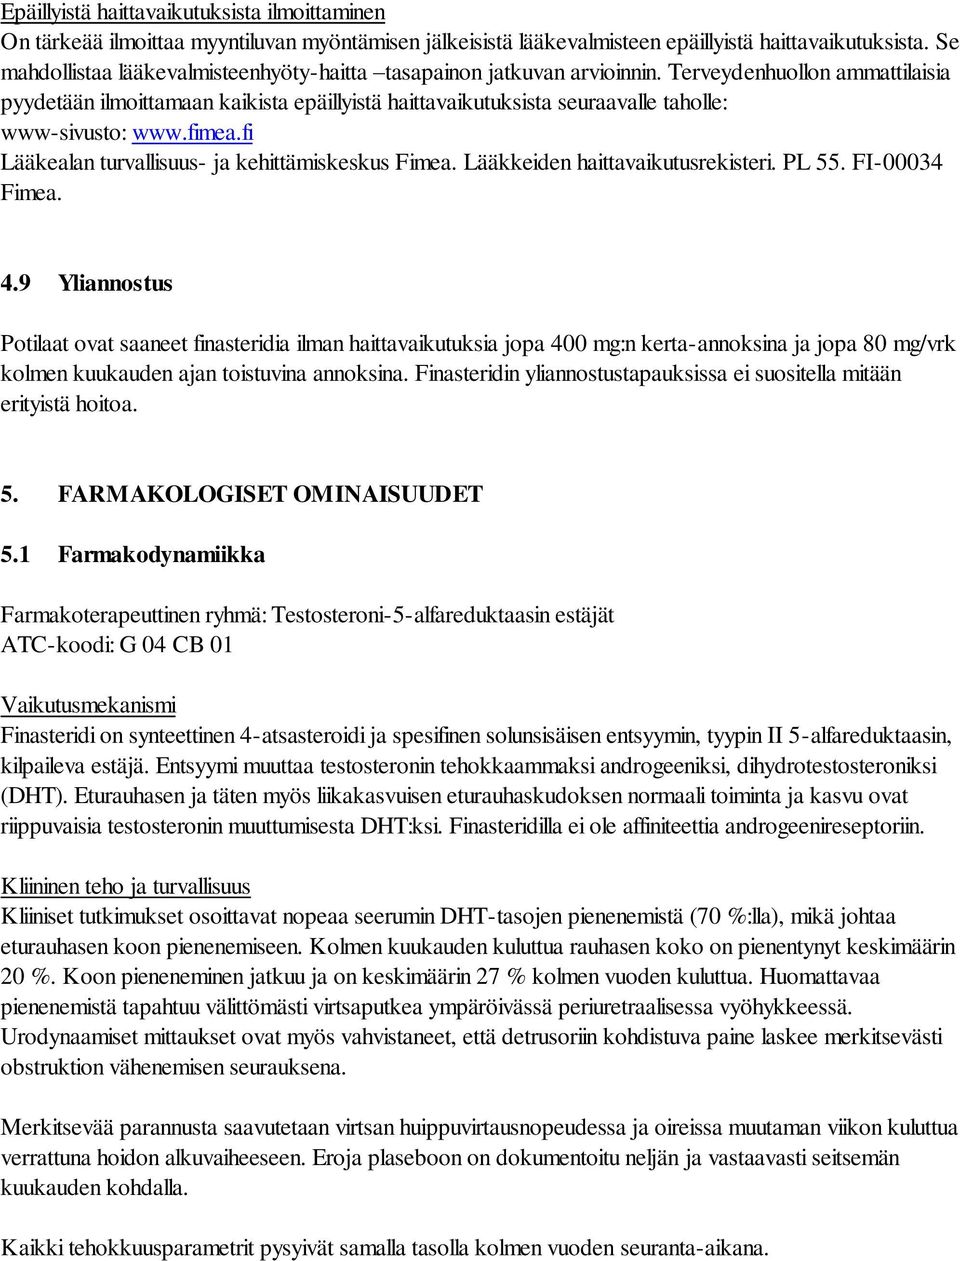 Terveydenhuollon ammattilaisia pyydetään ilmoittamaan kaikista epäillyistä haittavaikutuksista seuraavalle taholle: www-sivusto: www.fimea.fi Lääkealan turvallisuus- ja kehittämiskeskus Fimea.